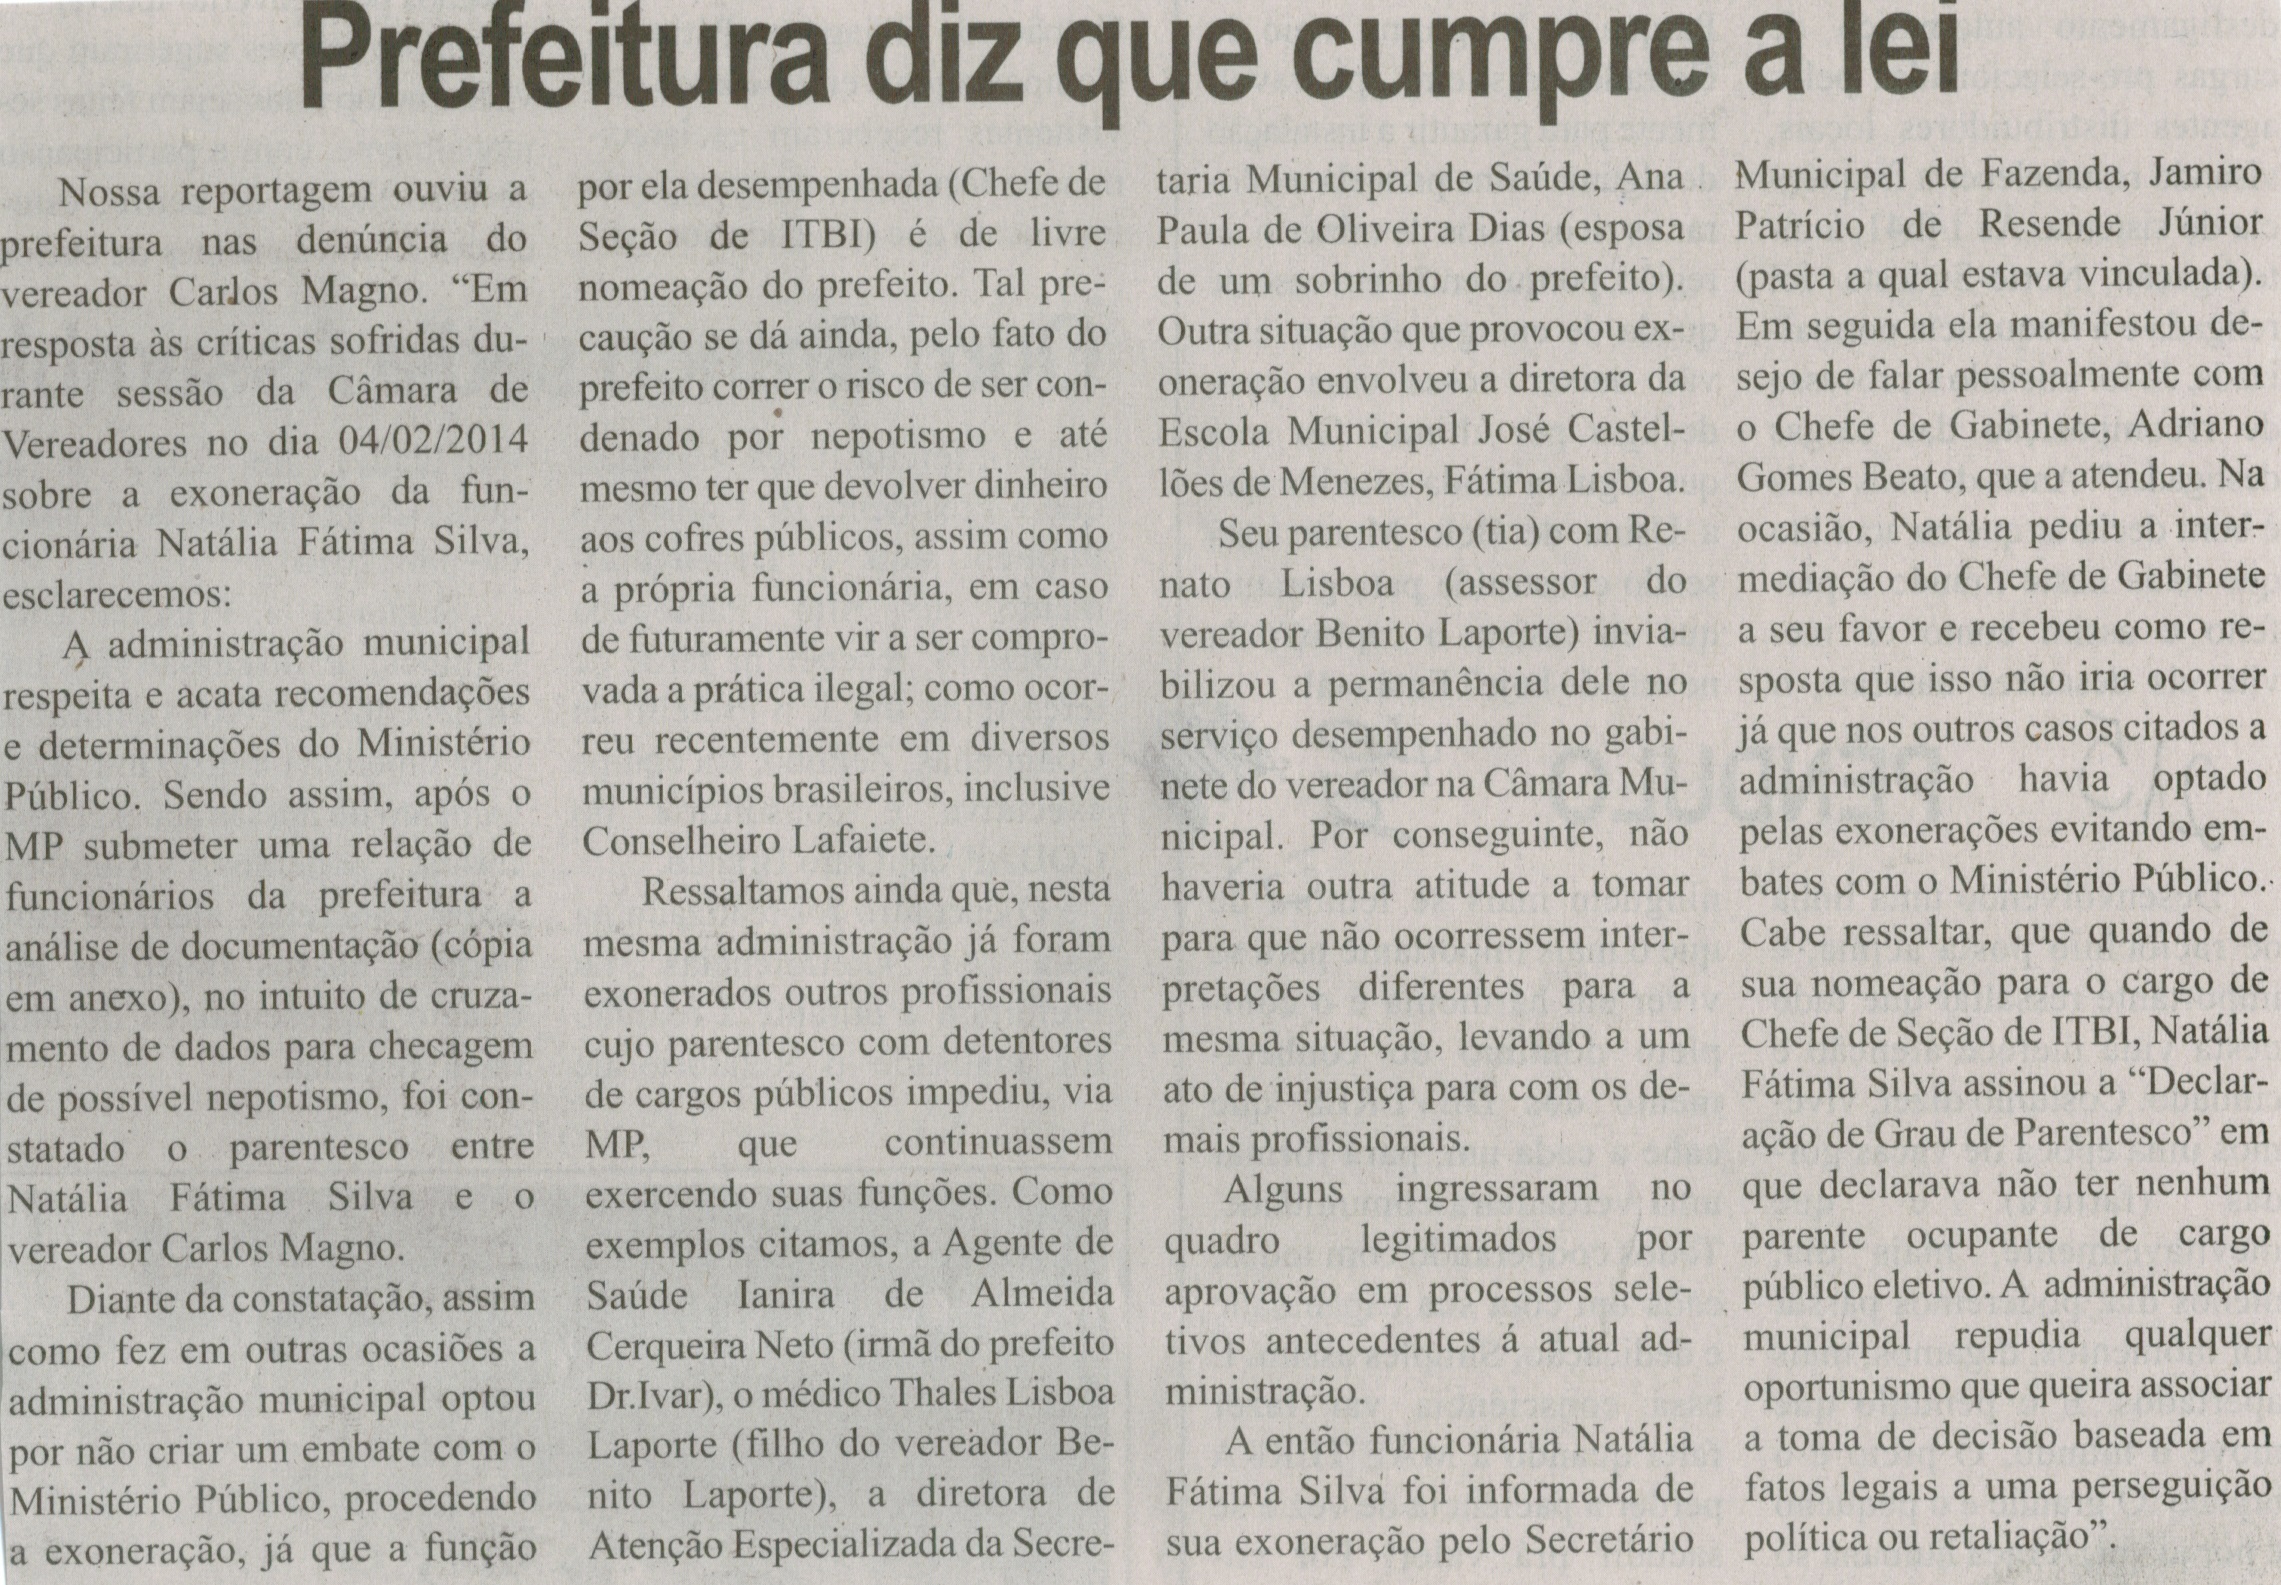 Prefeitura diz que cumpre a lei. Correio de Minas, Conselheiro Lafaiete,  08 fev. 2014, p. 3.